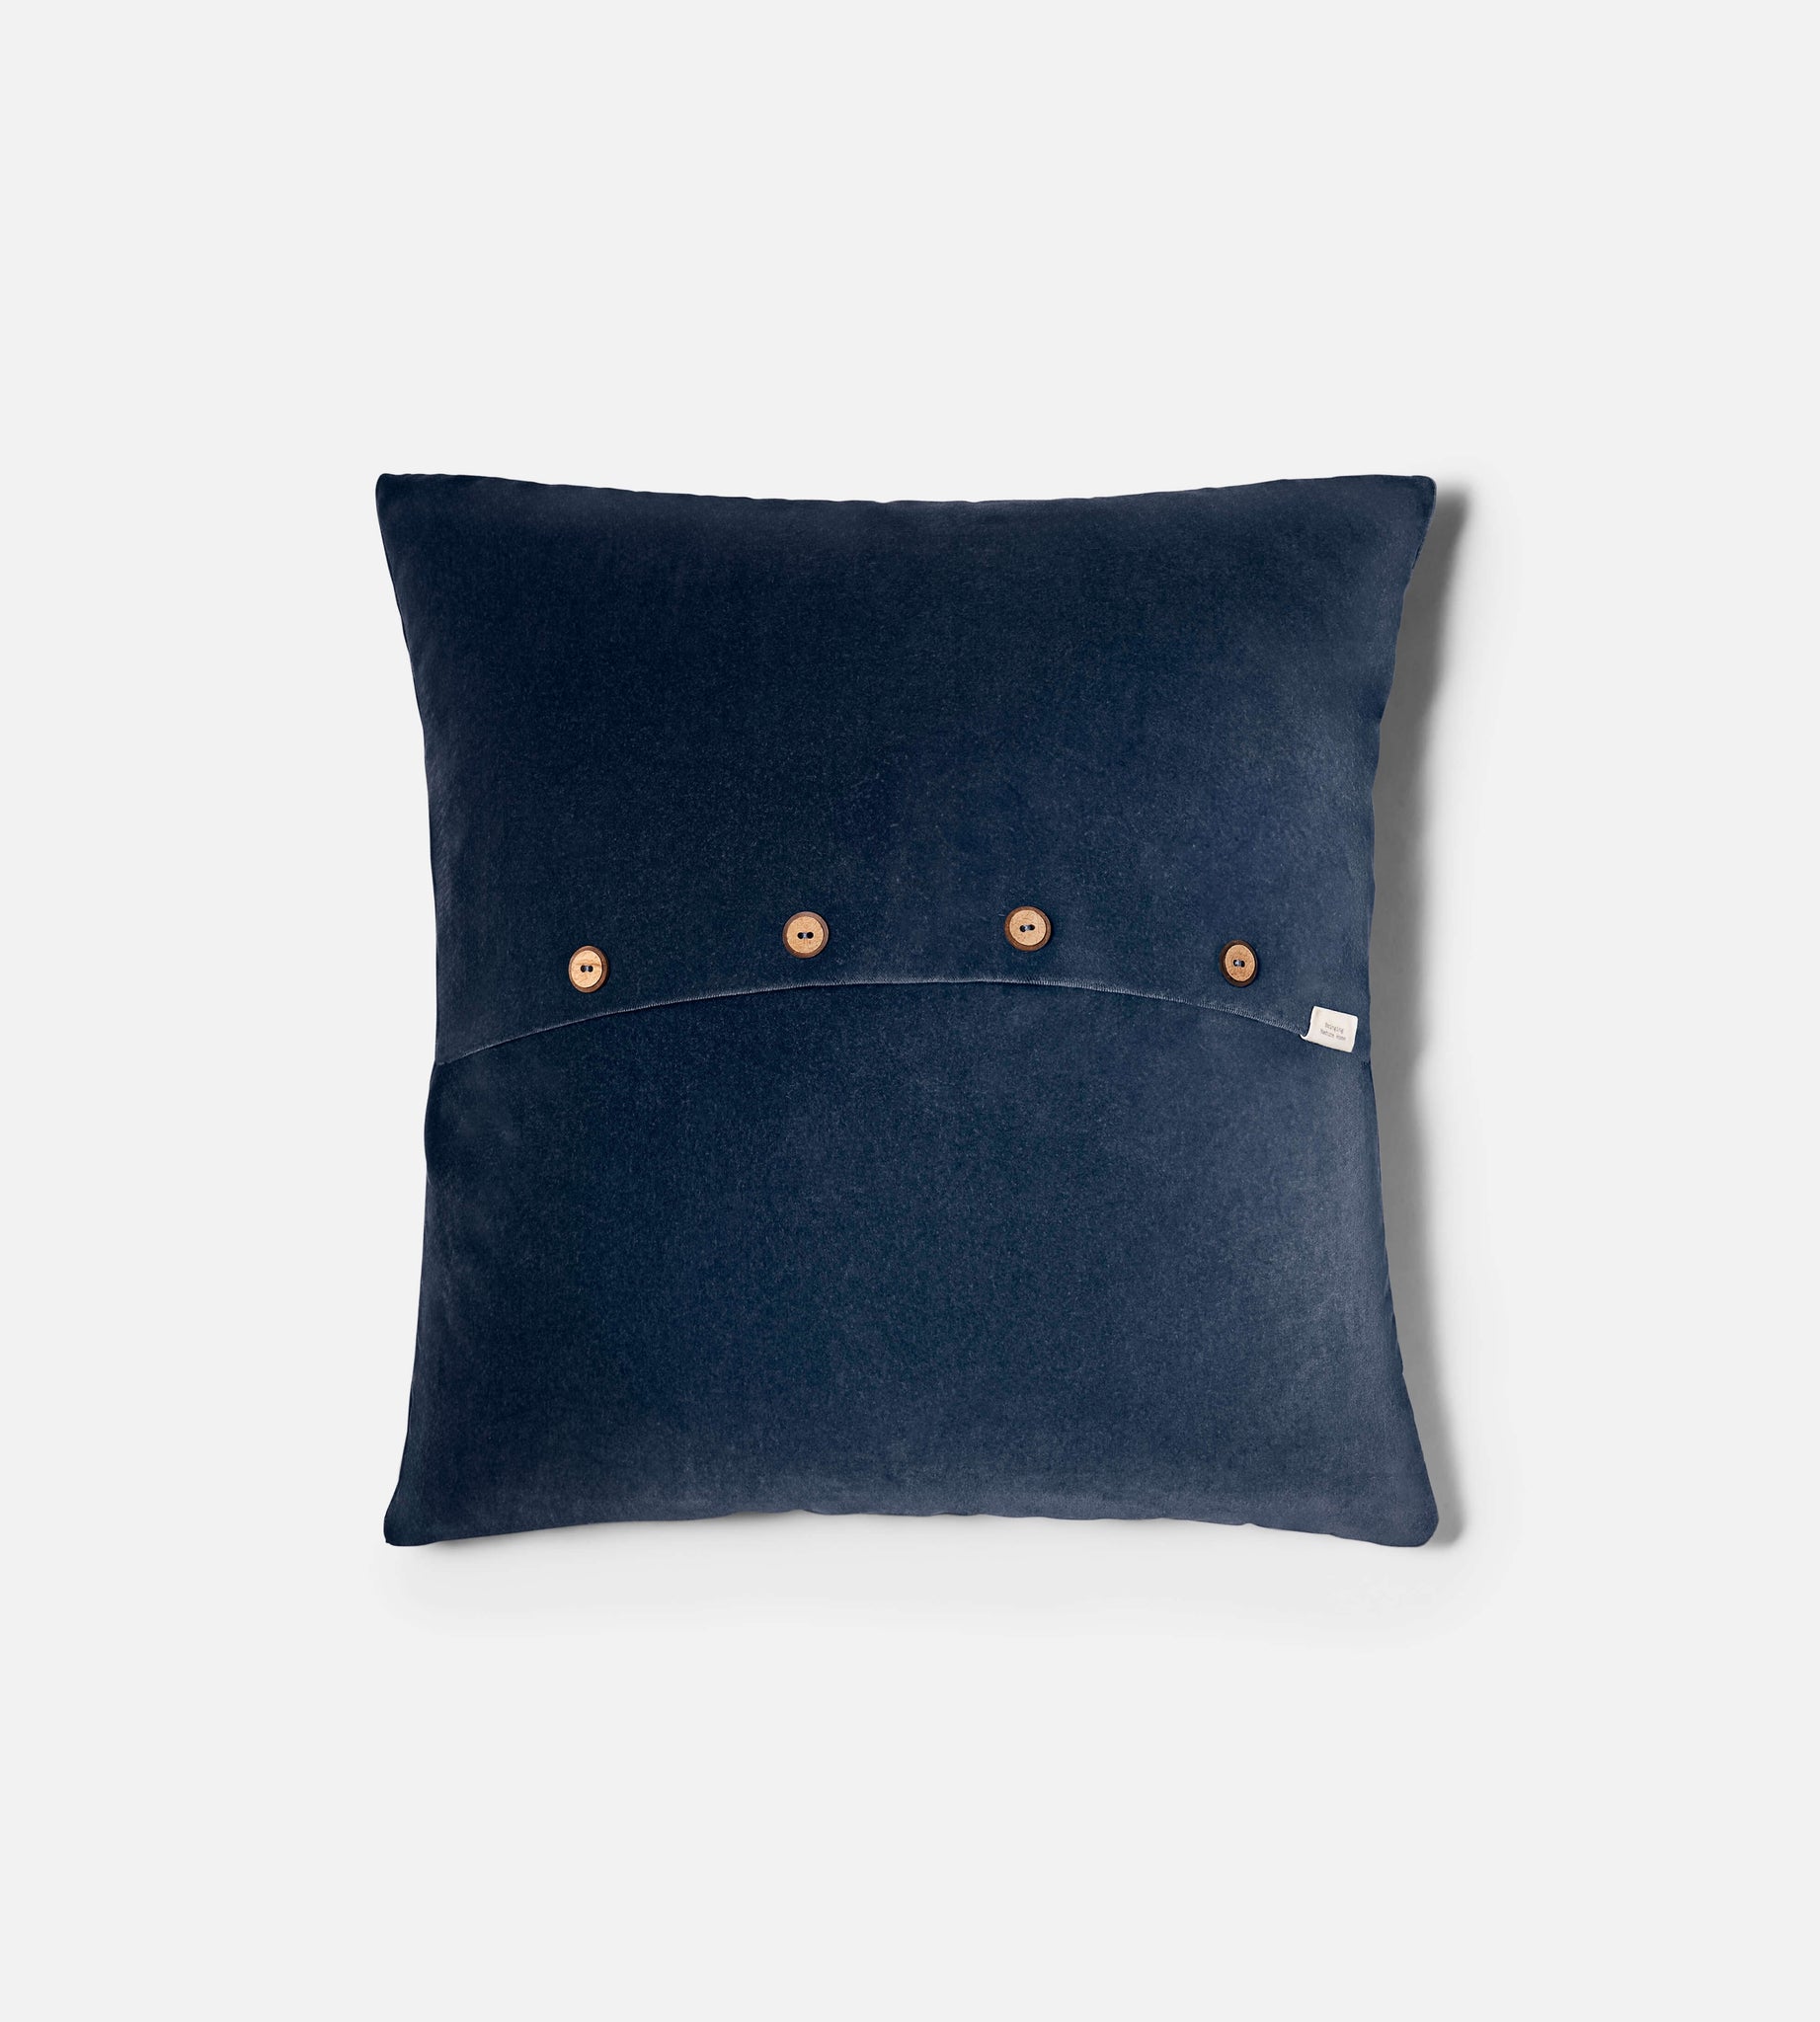 back button detail of navy velvet cushion